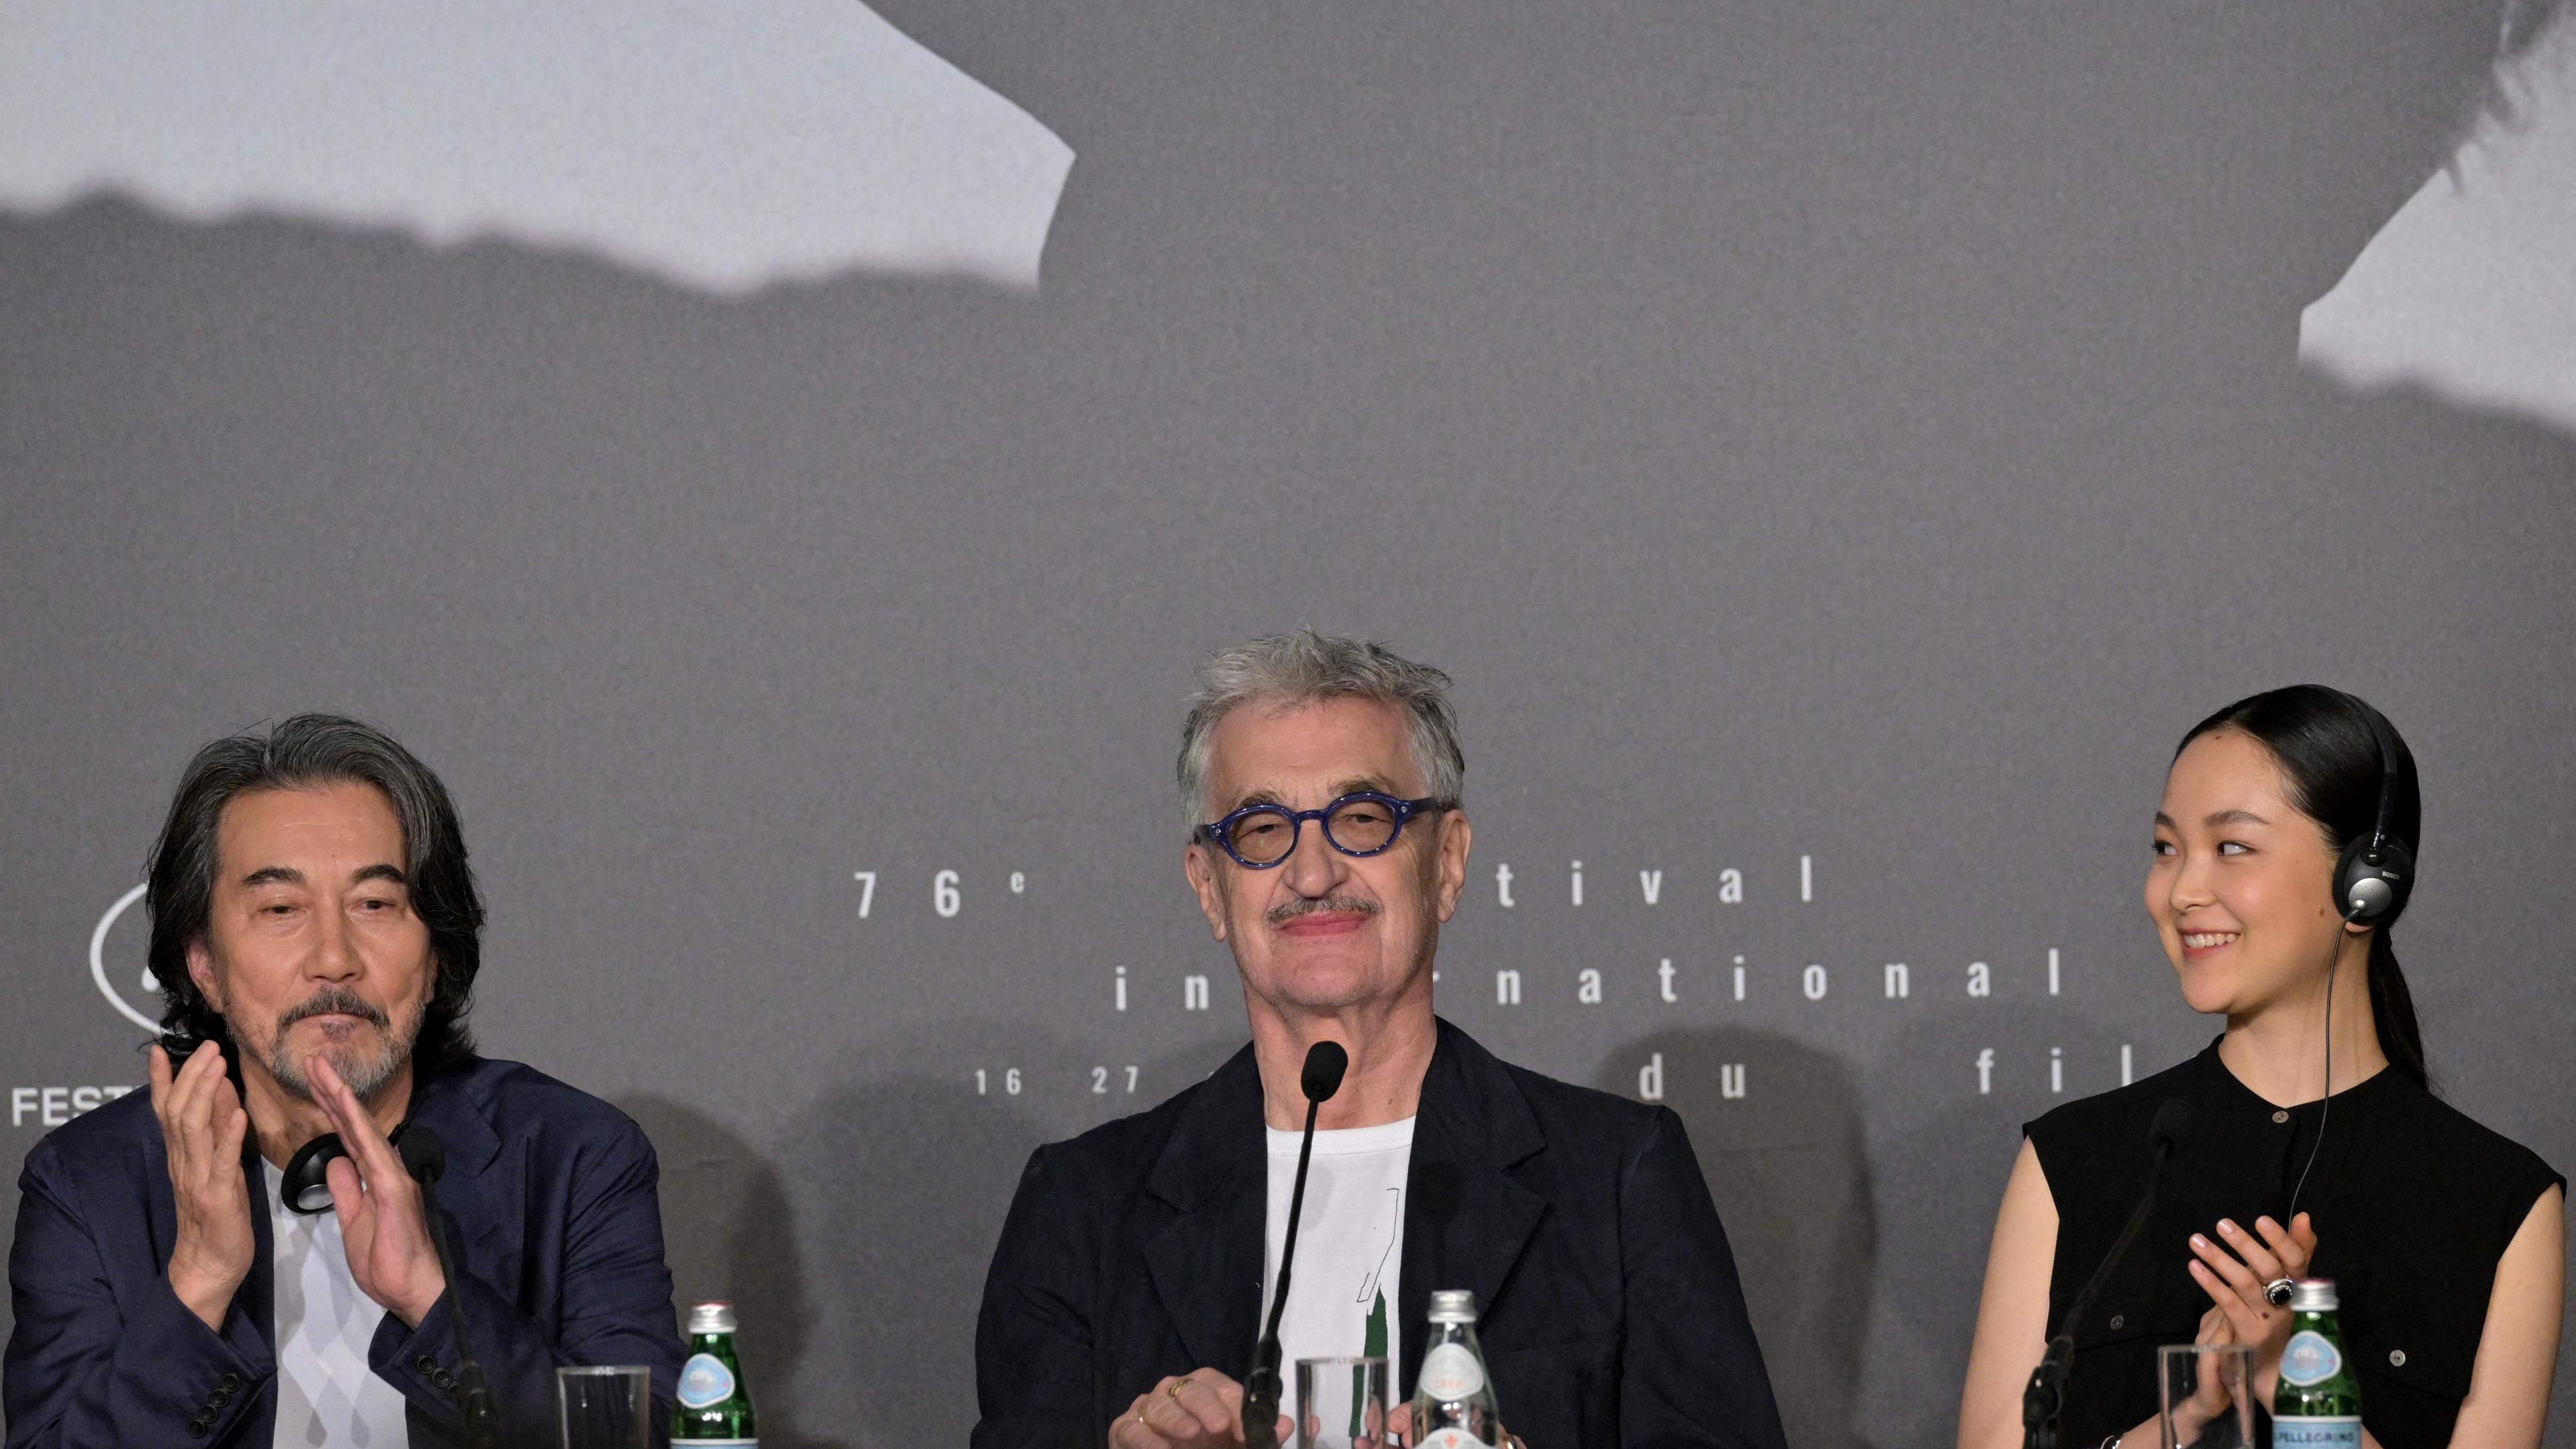 Der japanische Schauspieler Koji Yakusho, der deutsche Regisseur Wim Wenders und die japanische Schauspielerin Arisa Nakano nehmen an einer Pressekonferenz für den Film "Perfect Days" während der 76. Ausgabe der Filmfestspiele von Cannes teil.